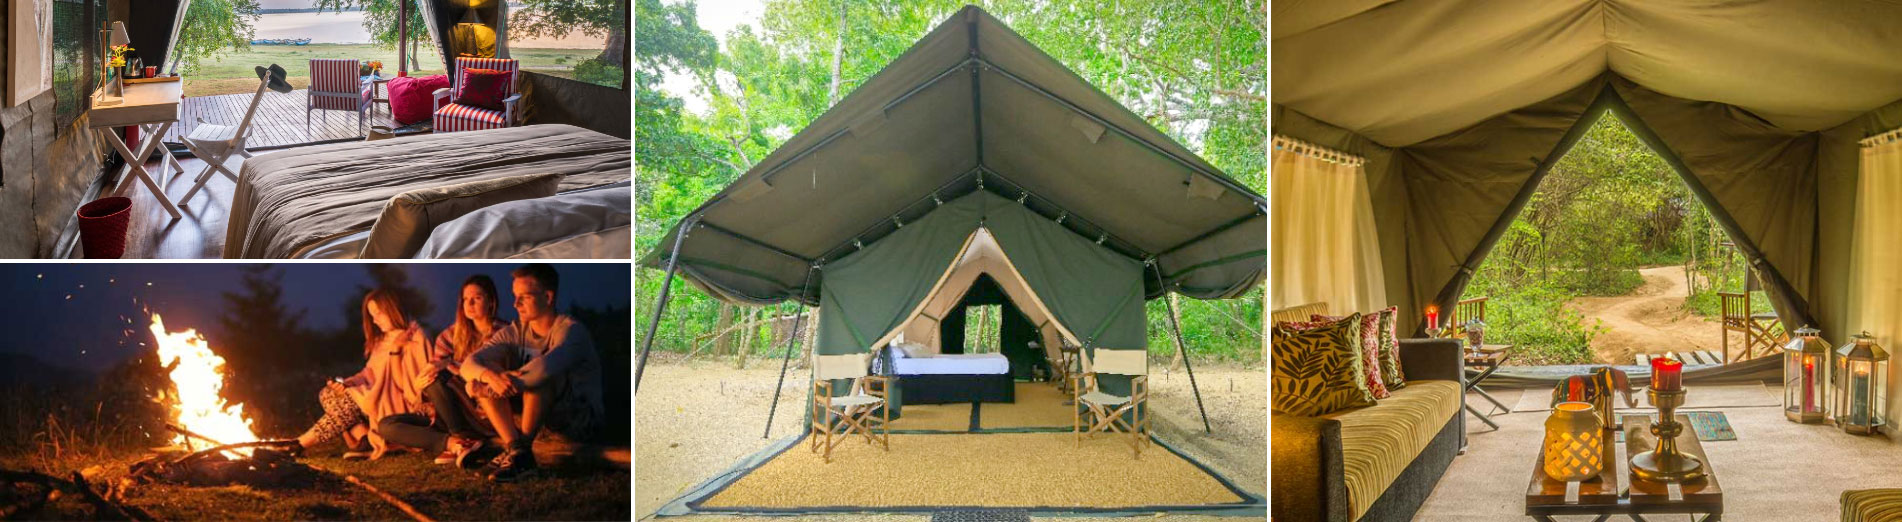 wilpattu safari camping